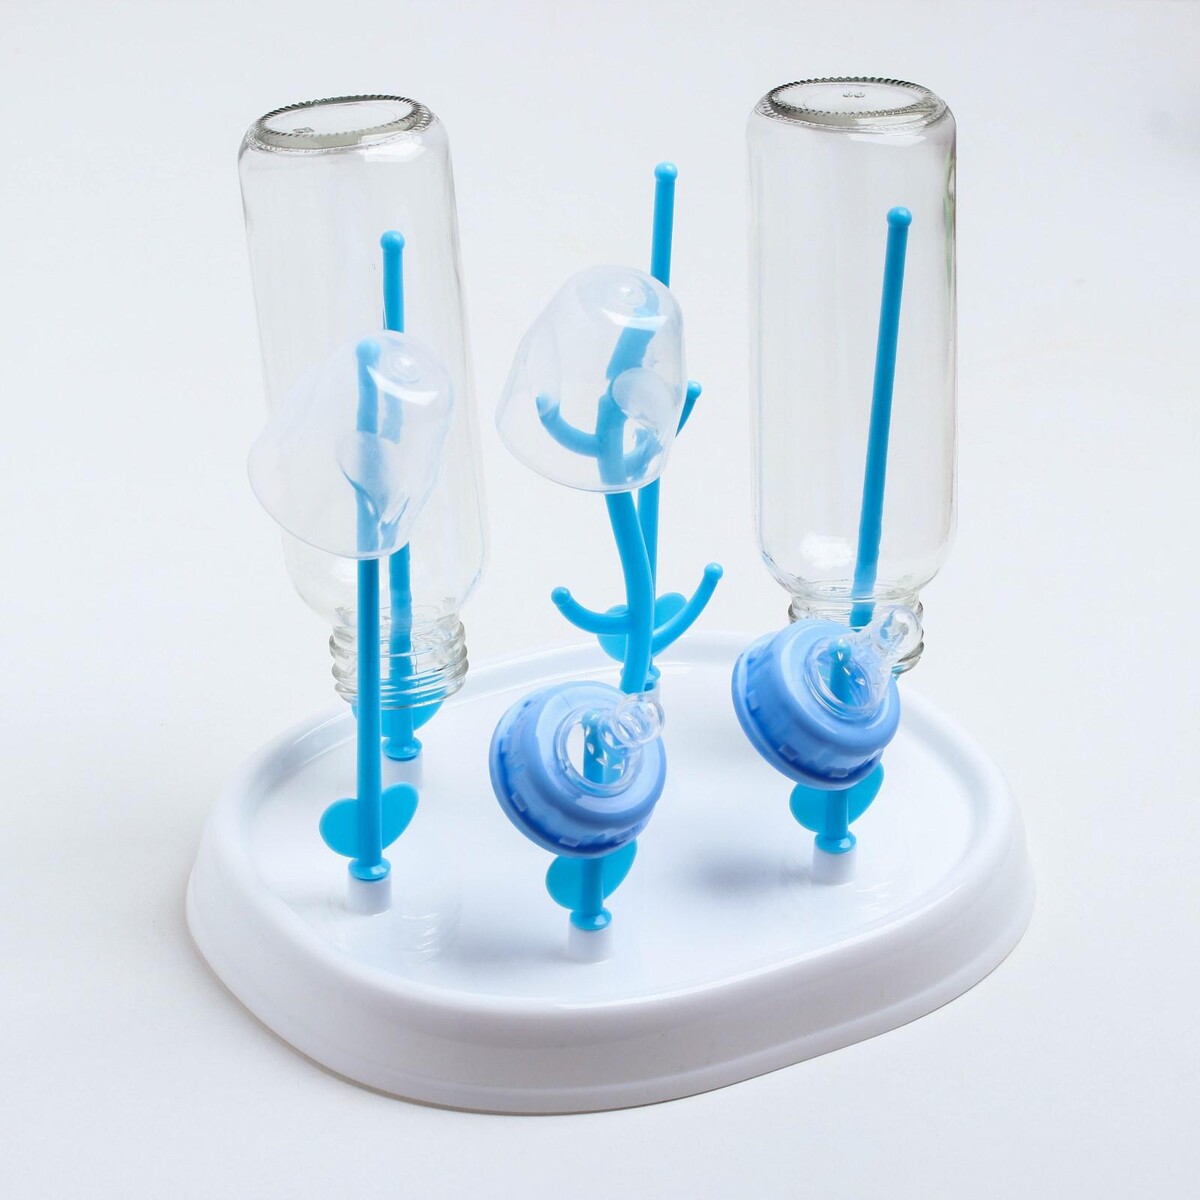 Сушилка для детских бутылочек, цвет белый/голубой uviton вертикальная сушилка для бутылочек